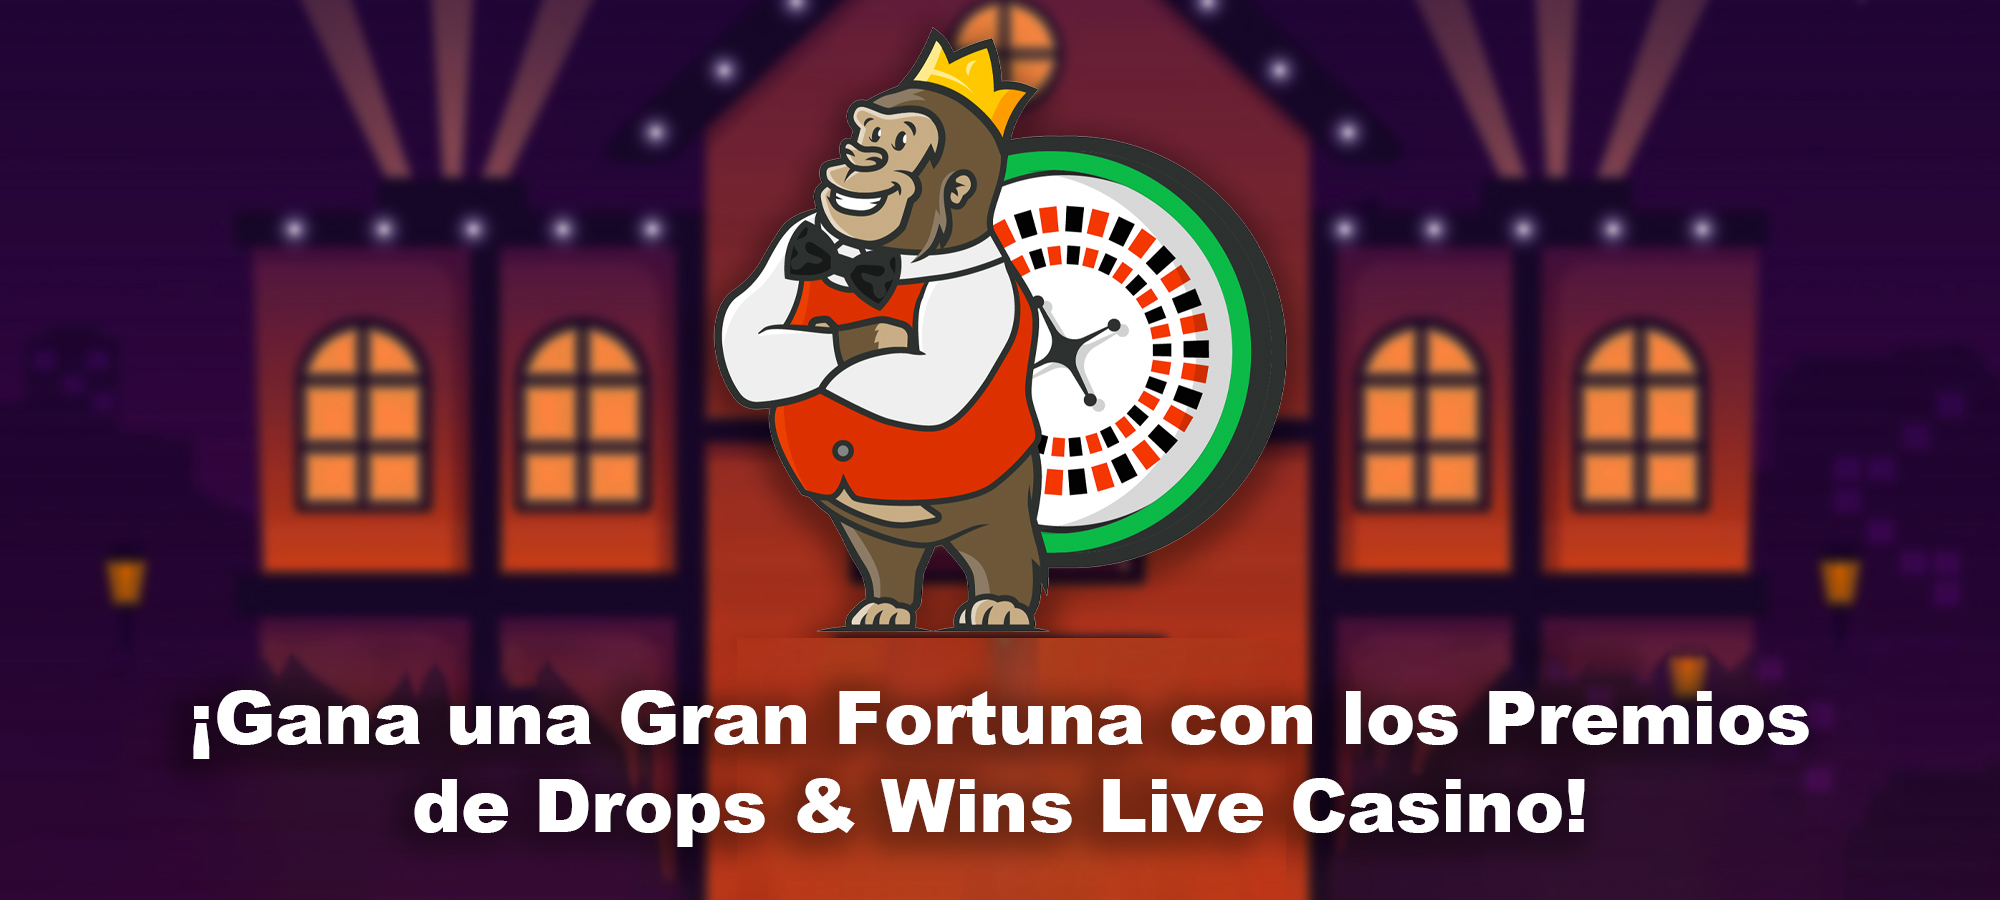 <strong>¡Gana una Gran Fortuna con los Premios de Drops & Wins Live Casino!</strong>